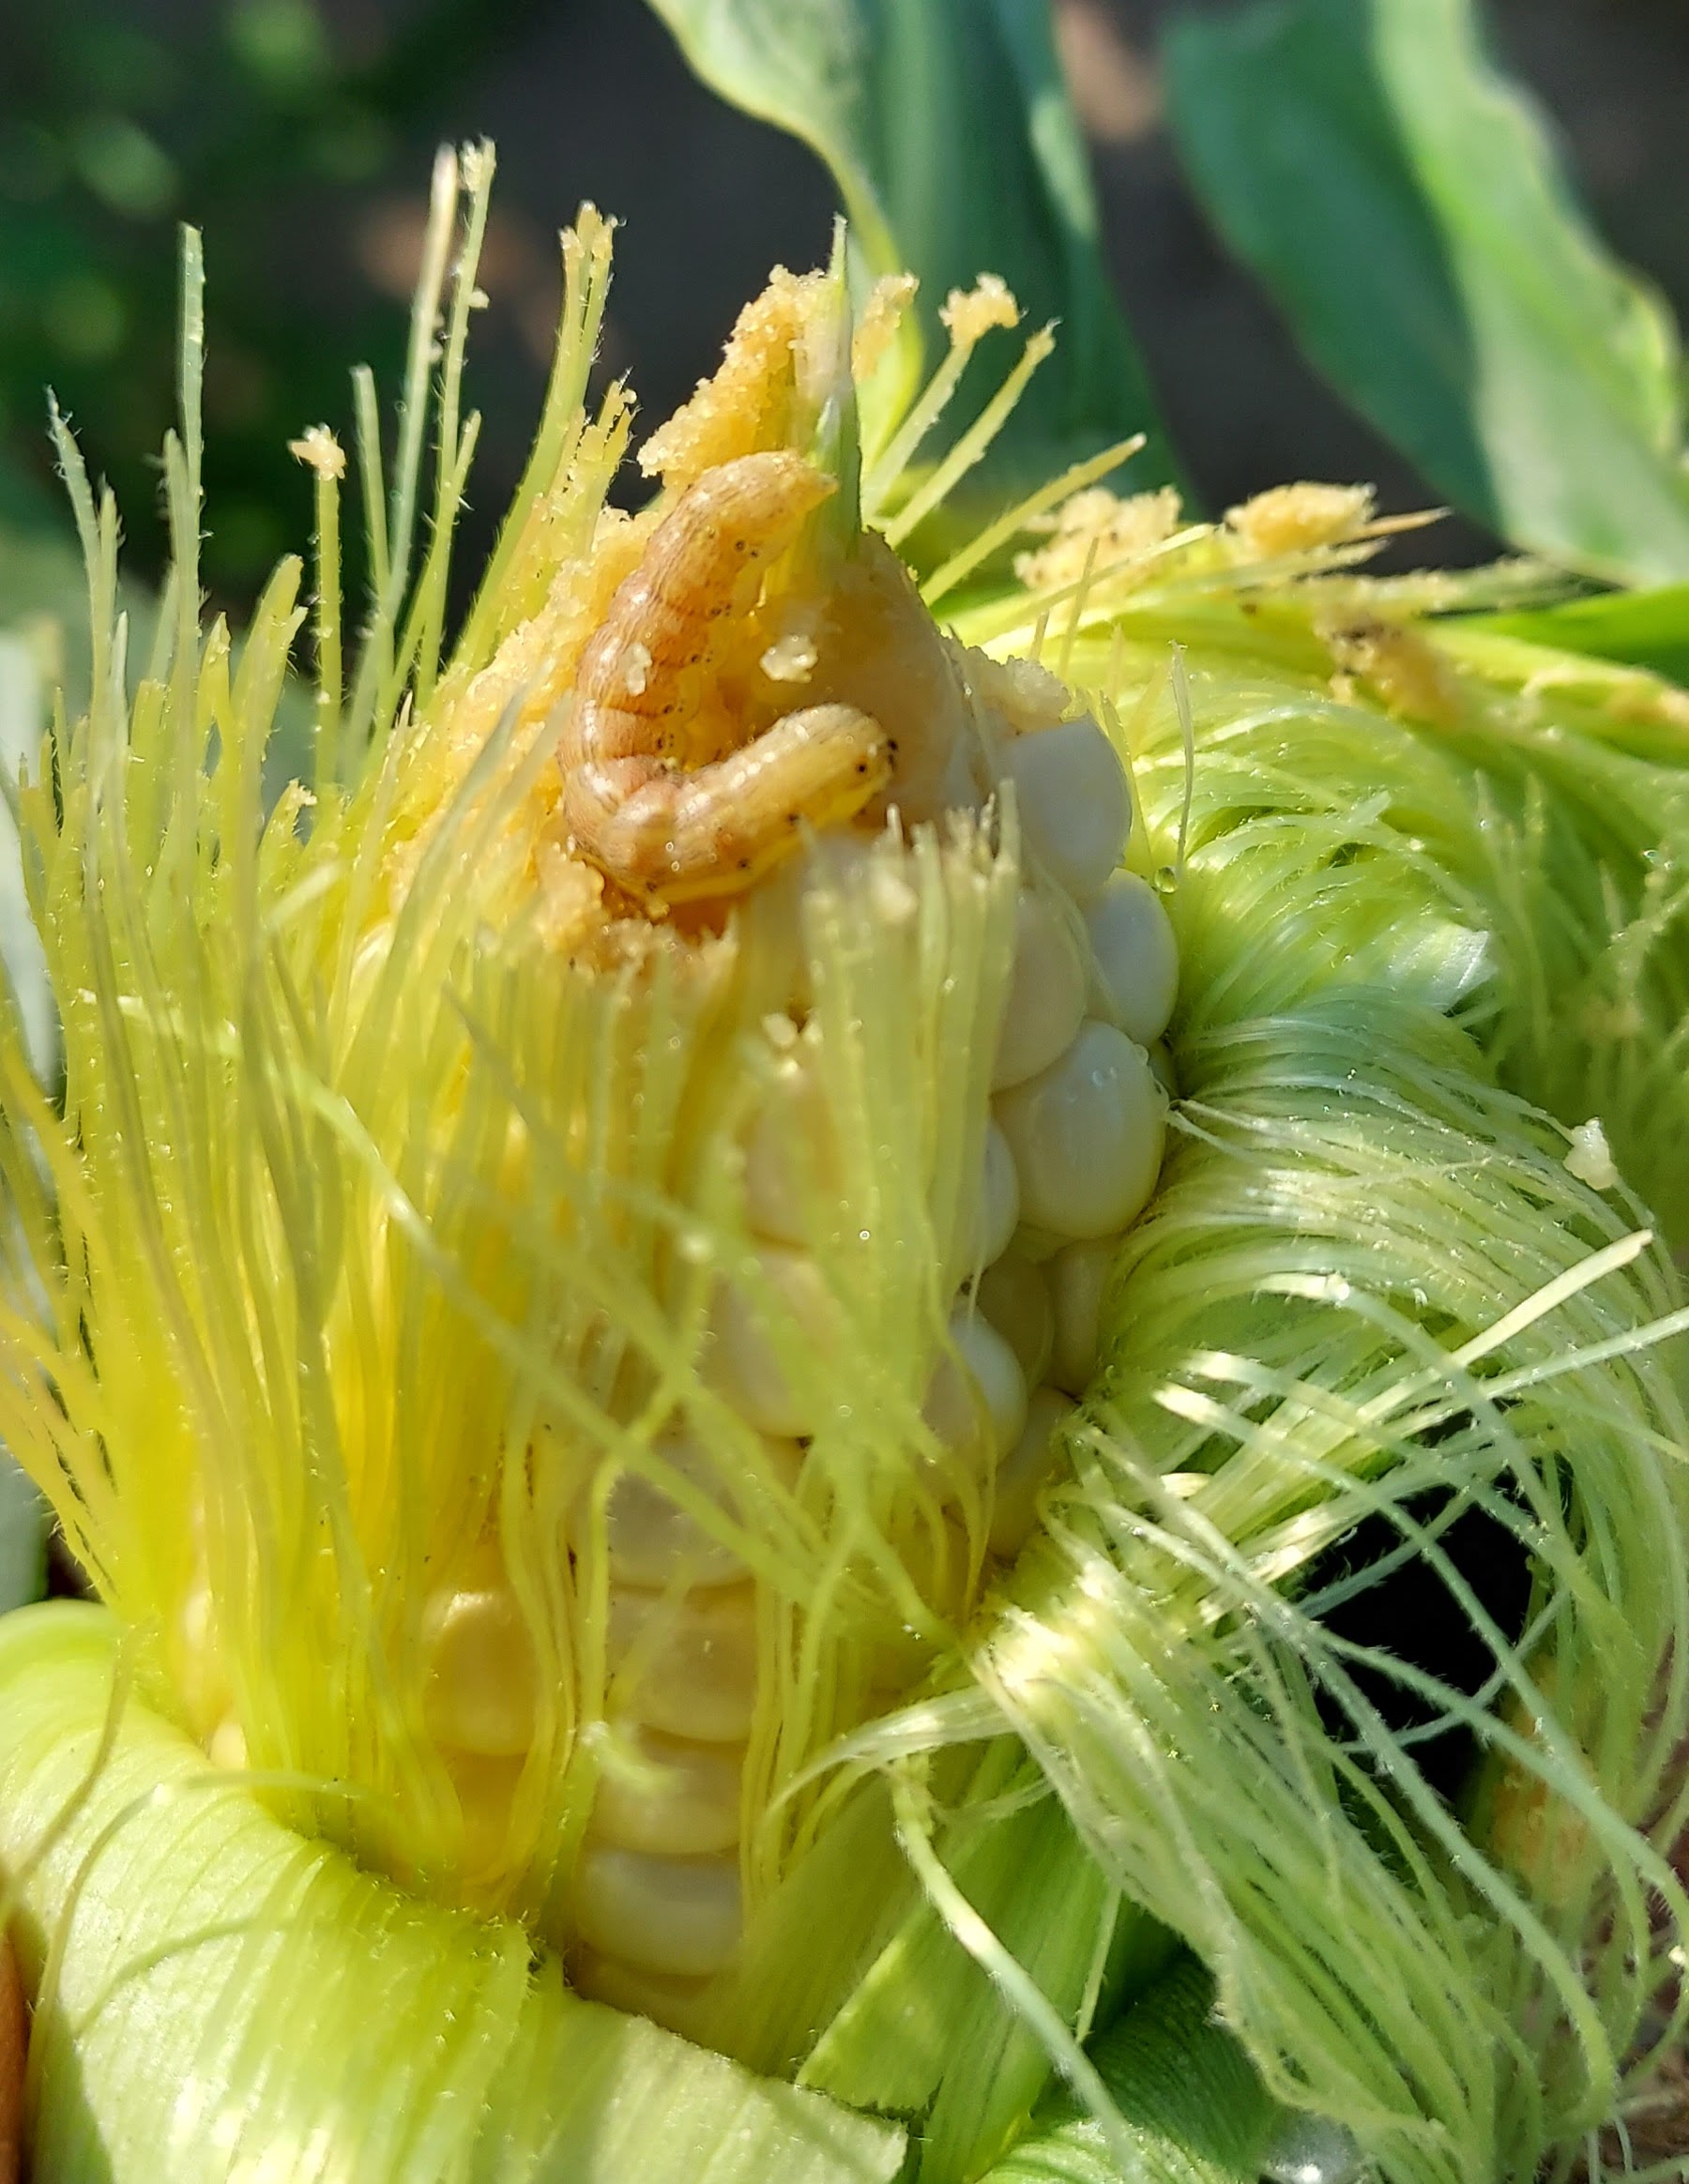 A corn earworm on top of an ear of corn.